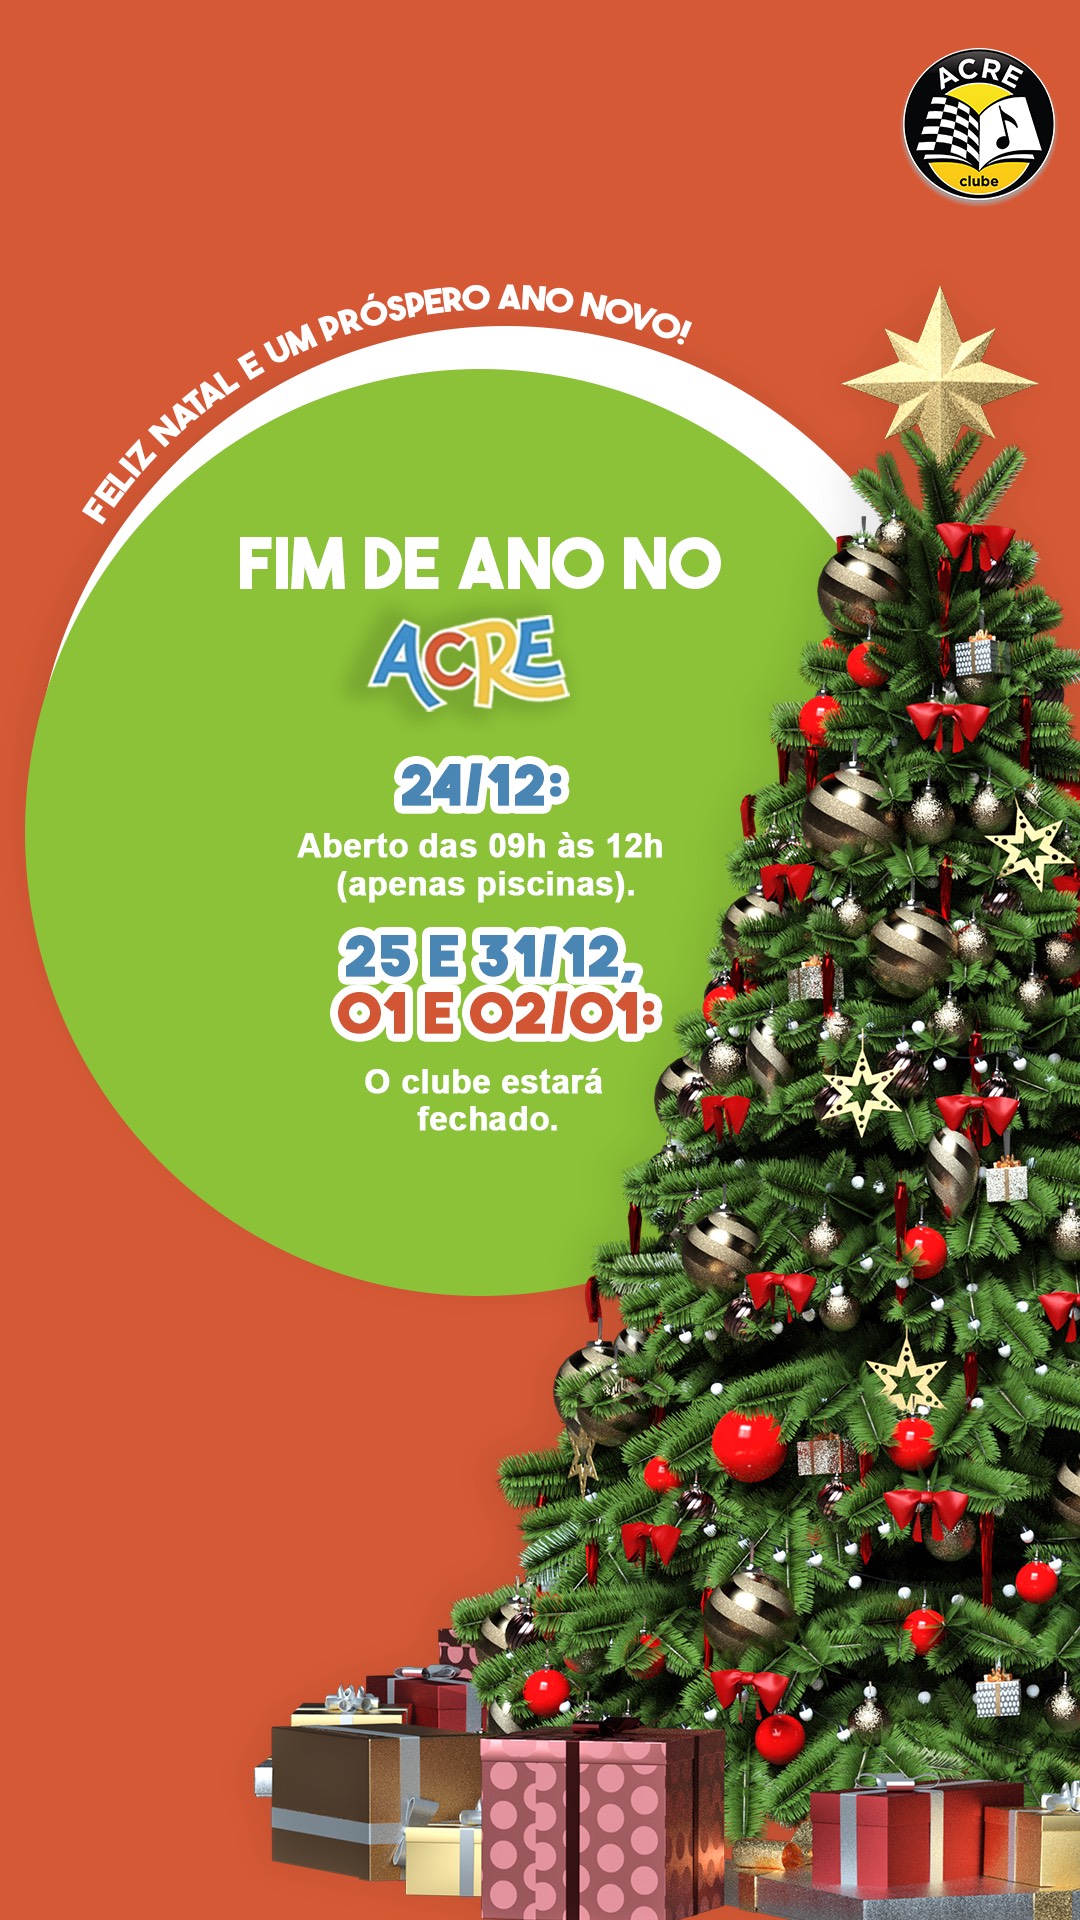 FIM DE ANO NO ACRE CLUBE! - Acre Clube  Associação cultural recreativa  esportiva